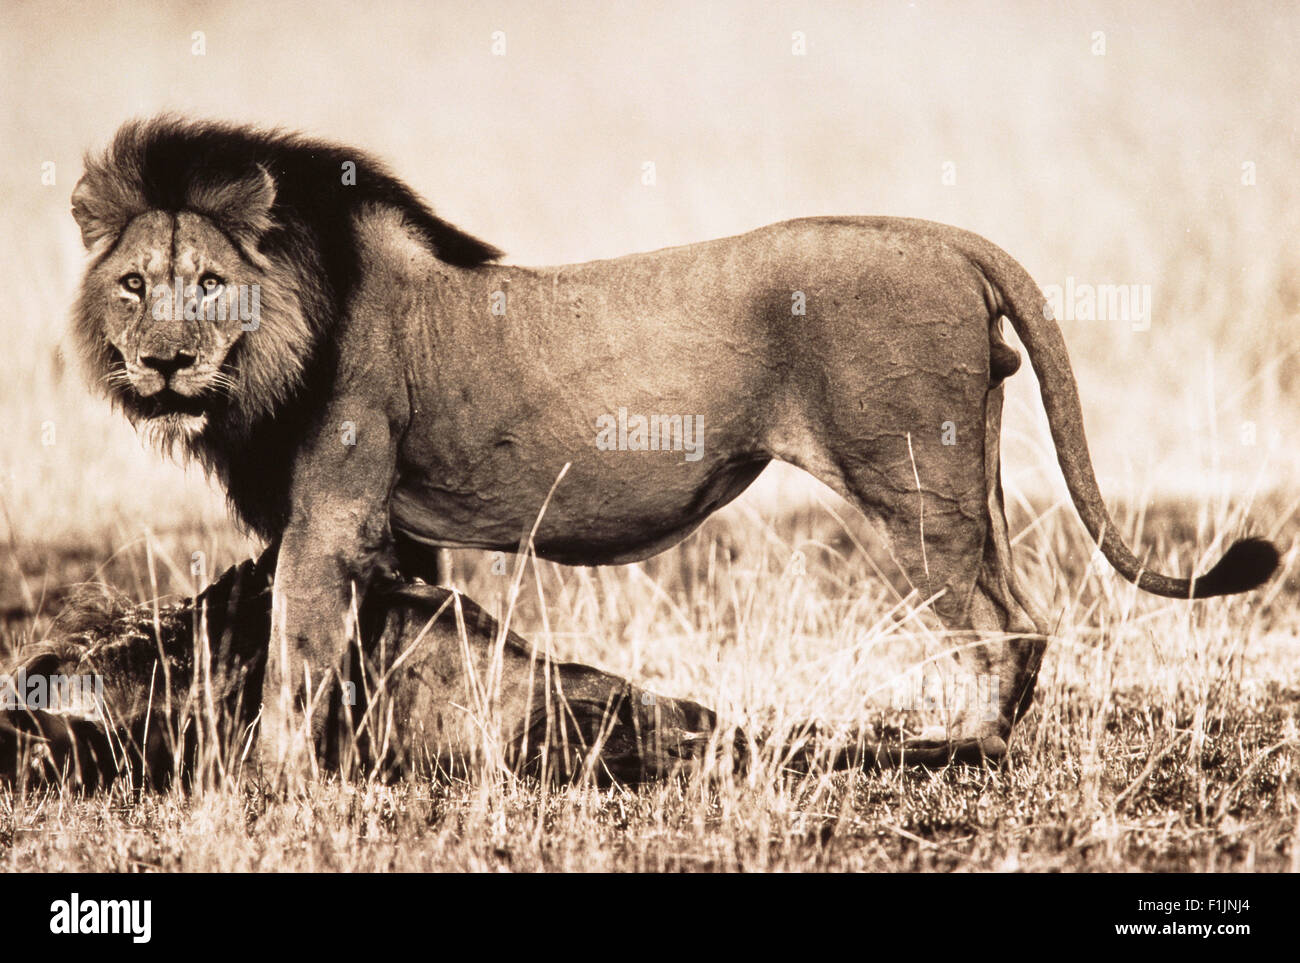 Portrait de Lion debout sur la proie Banque D'Images